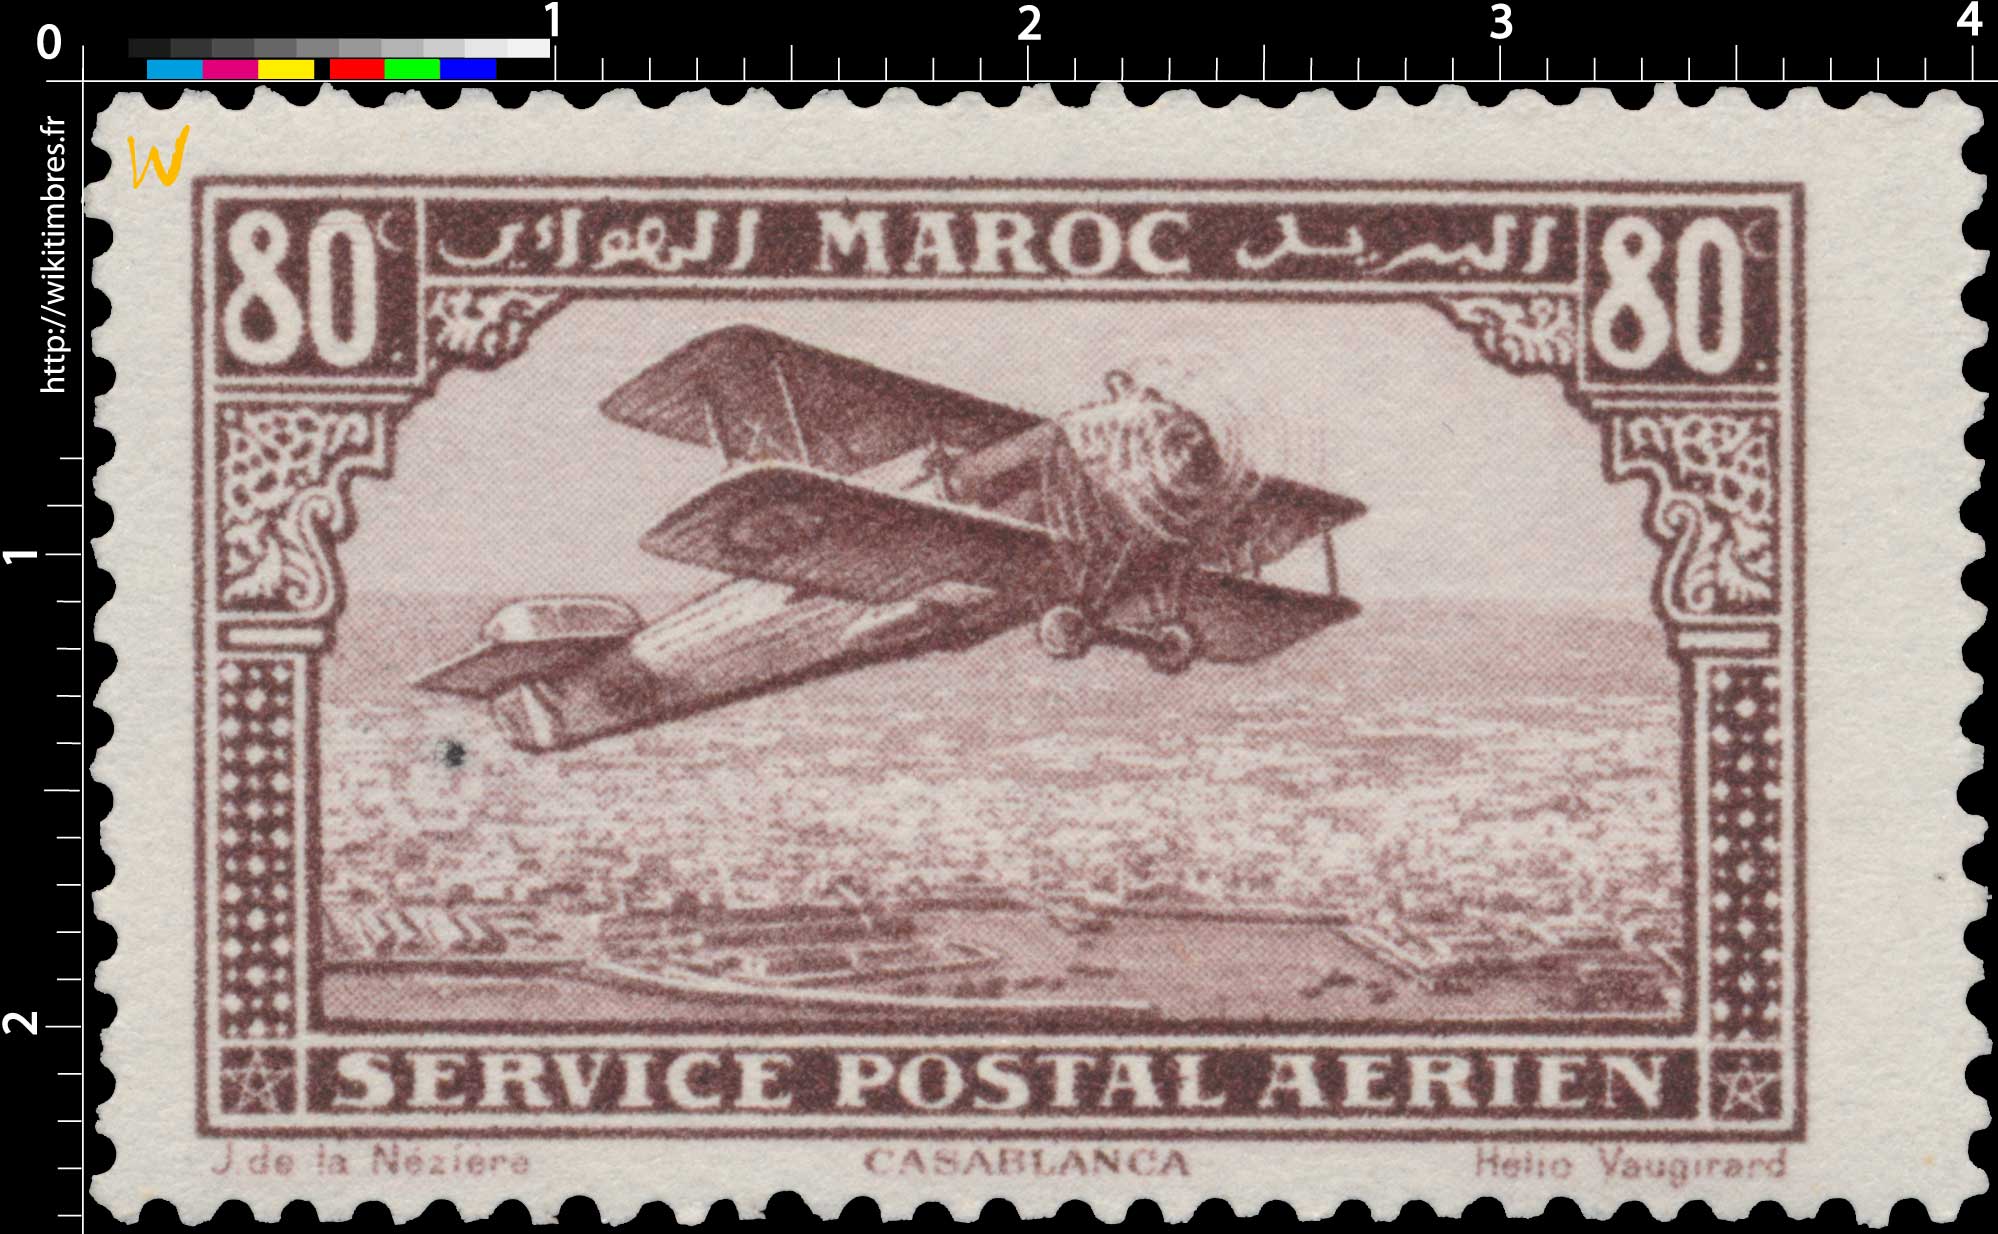 1922 Maroc - Avion survolant Casablanca